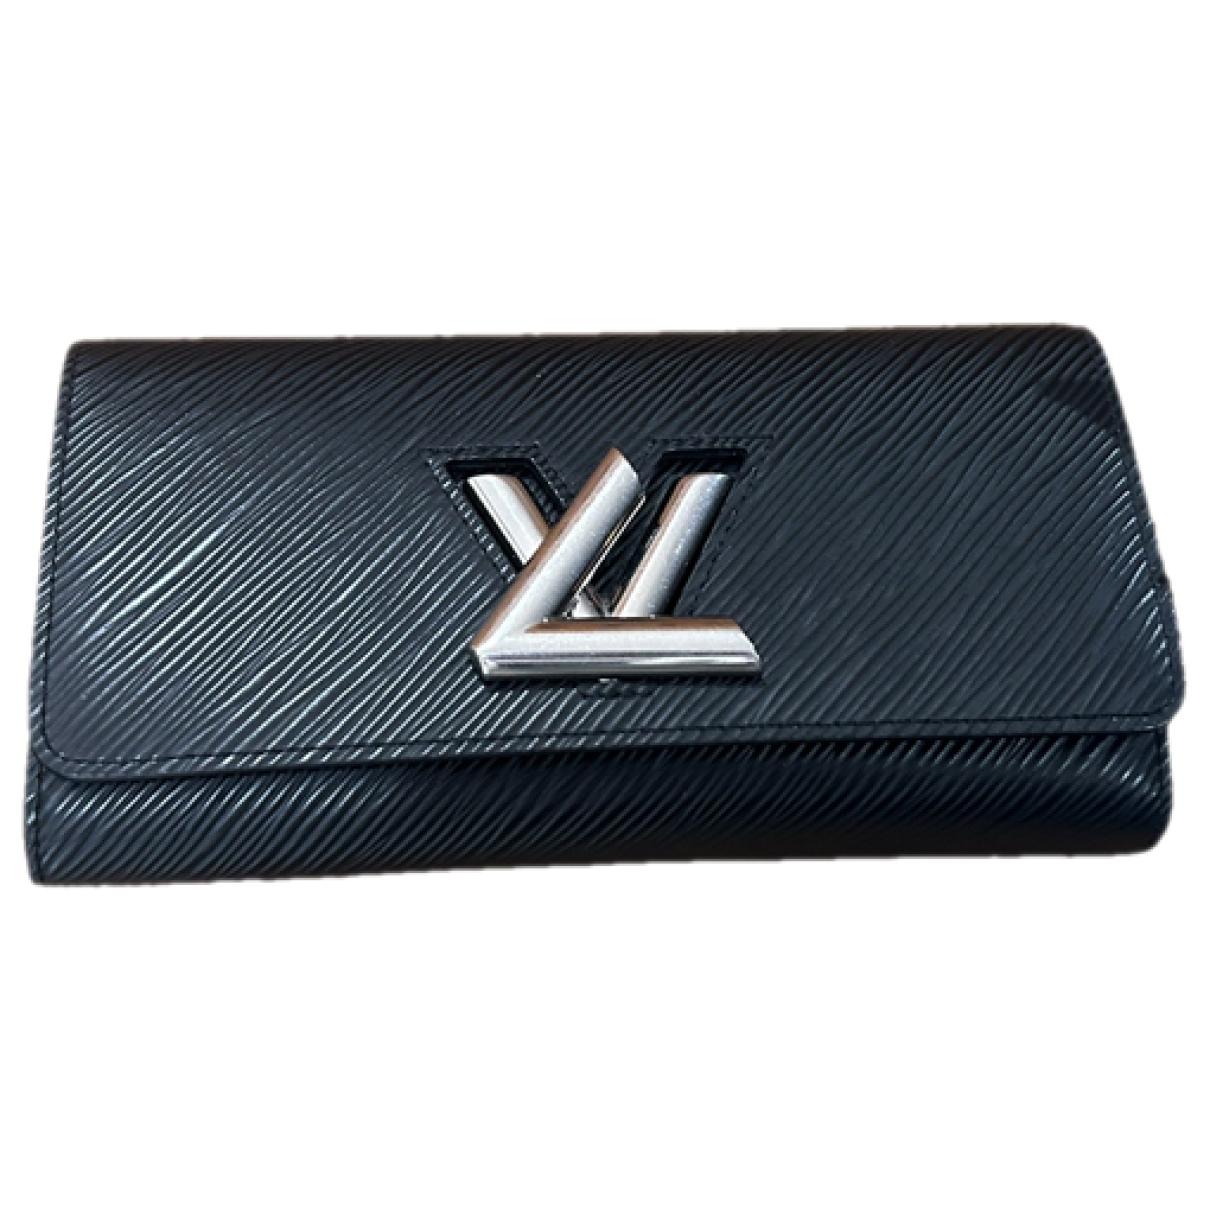 Accesorios Louis Vuitton x Supreme para Mujer - Vestiaire Collective